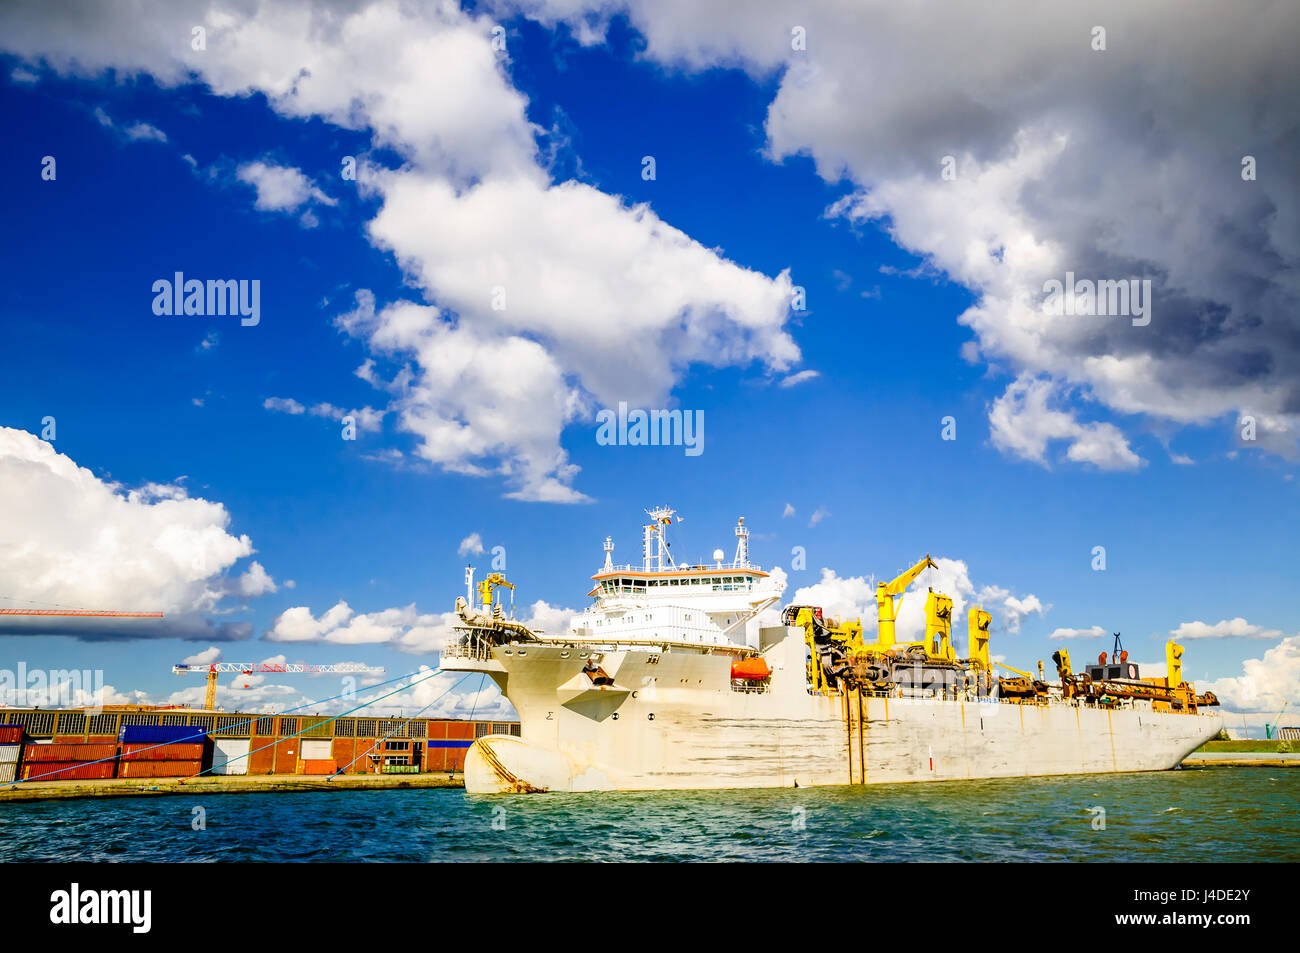 Transport ship in the port of Antwerp in Belgium Stock Photo